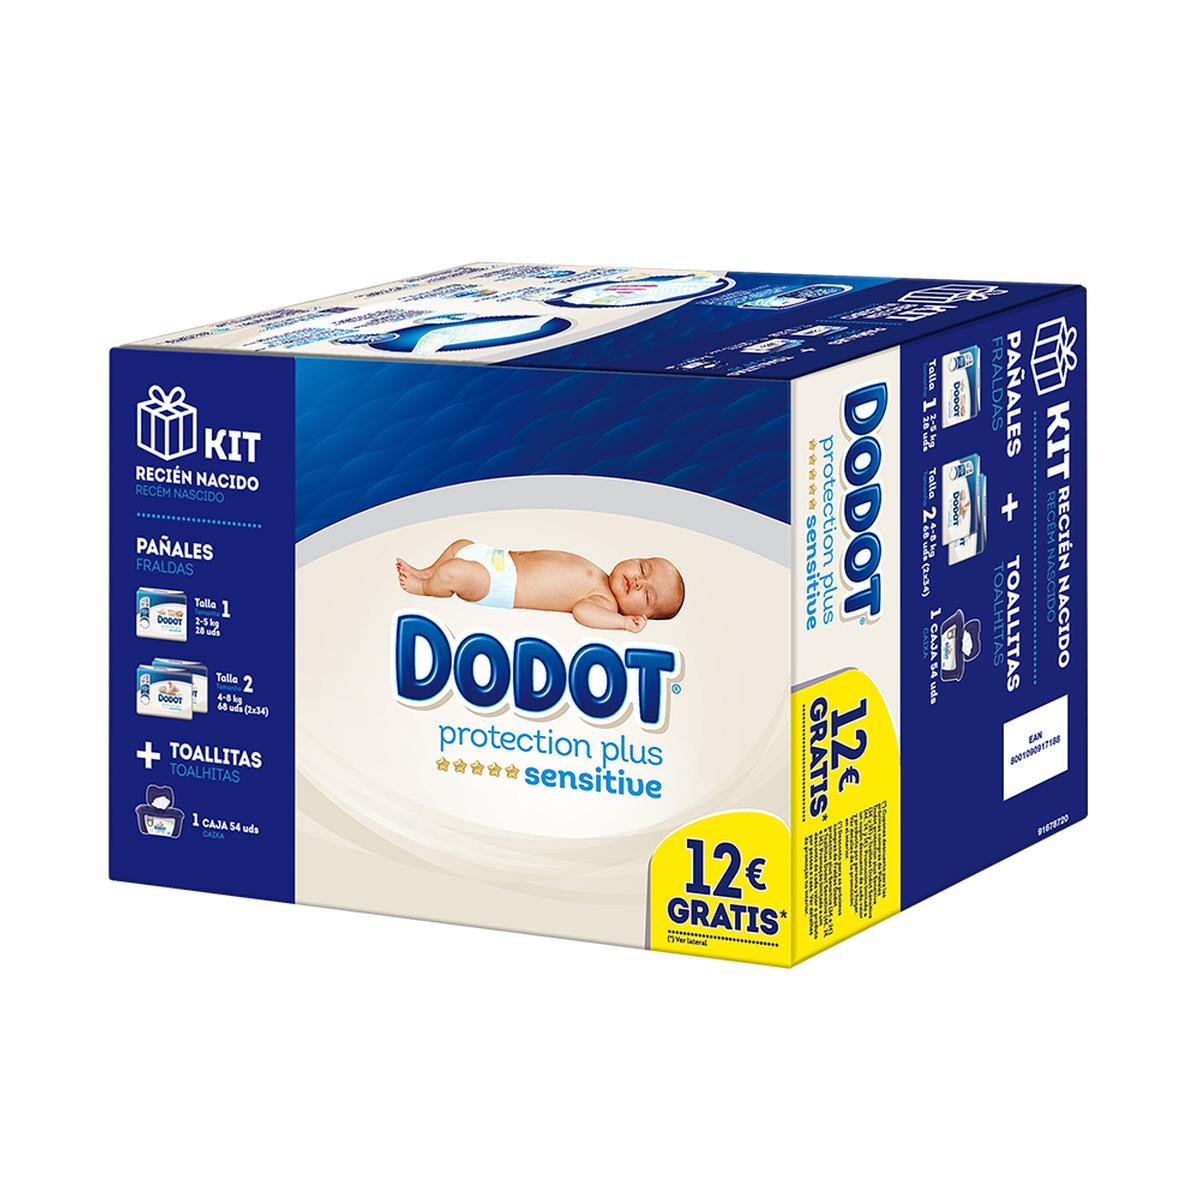 Dodot - Pañales Sensitive Kit Nacido | Recien Nacido | España